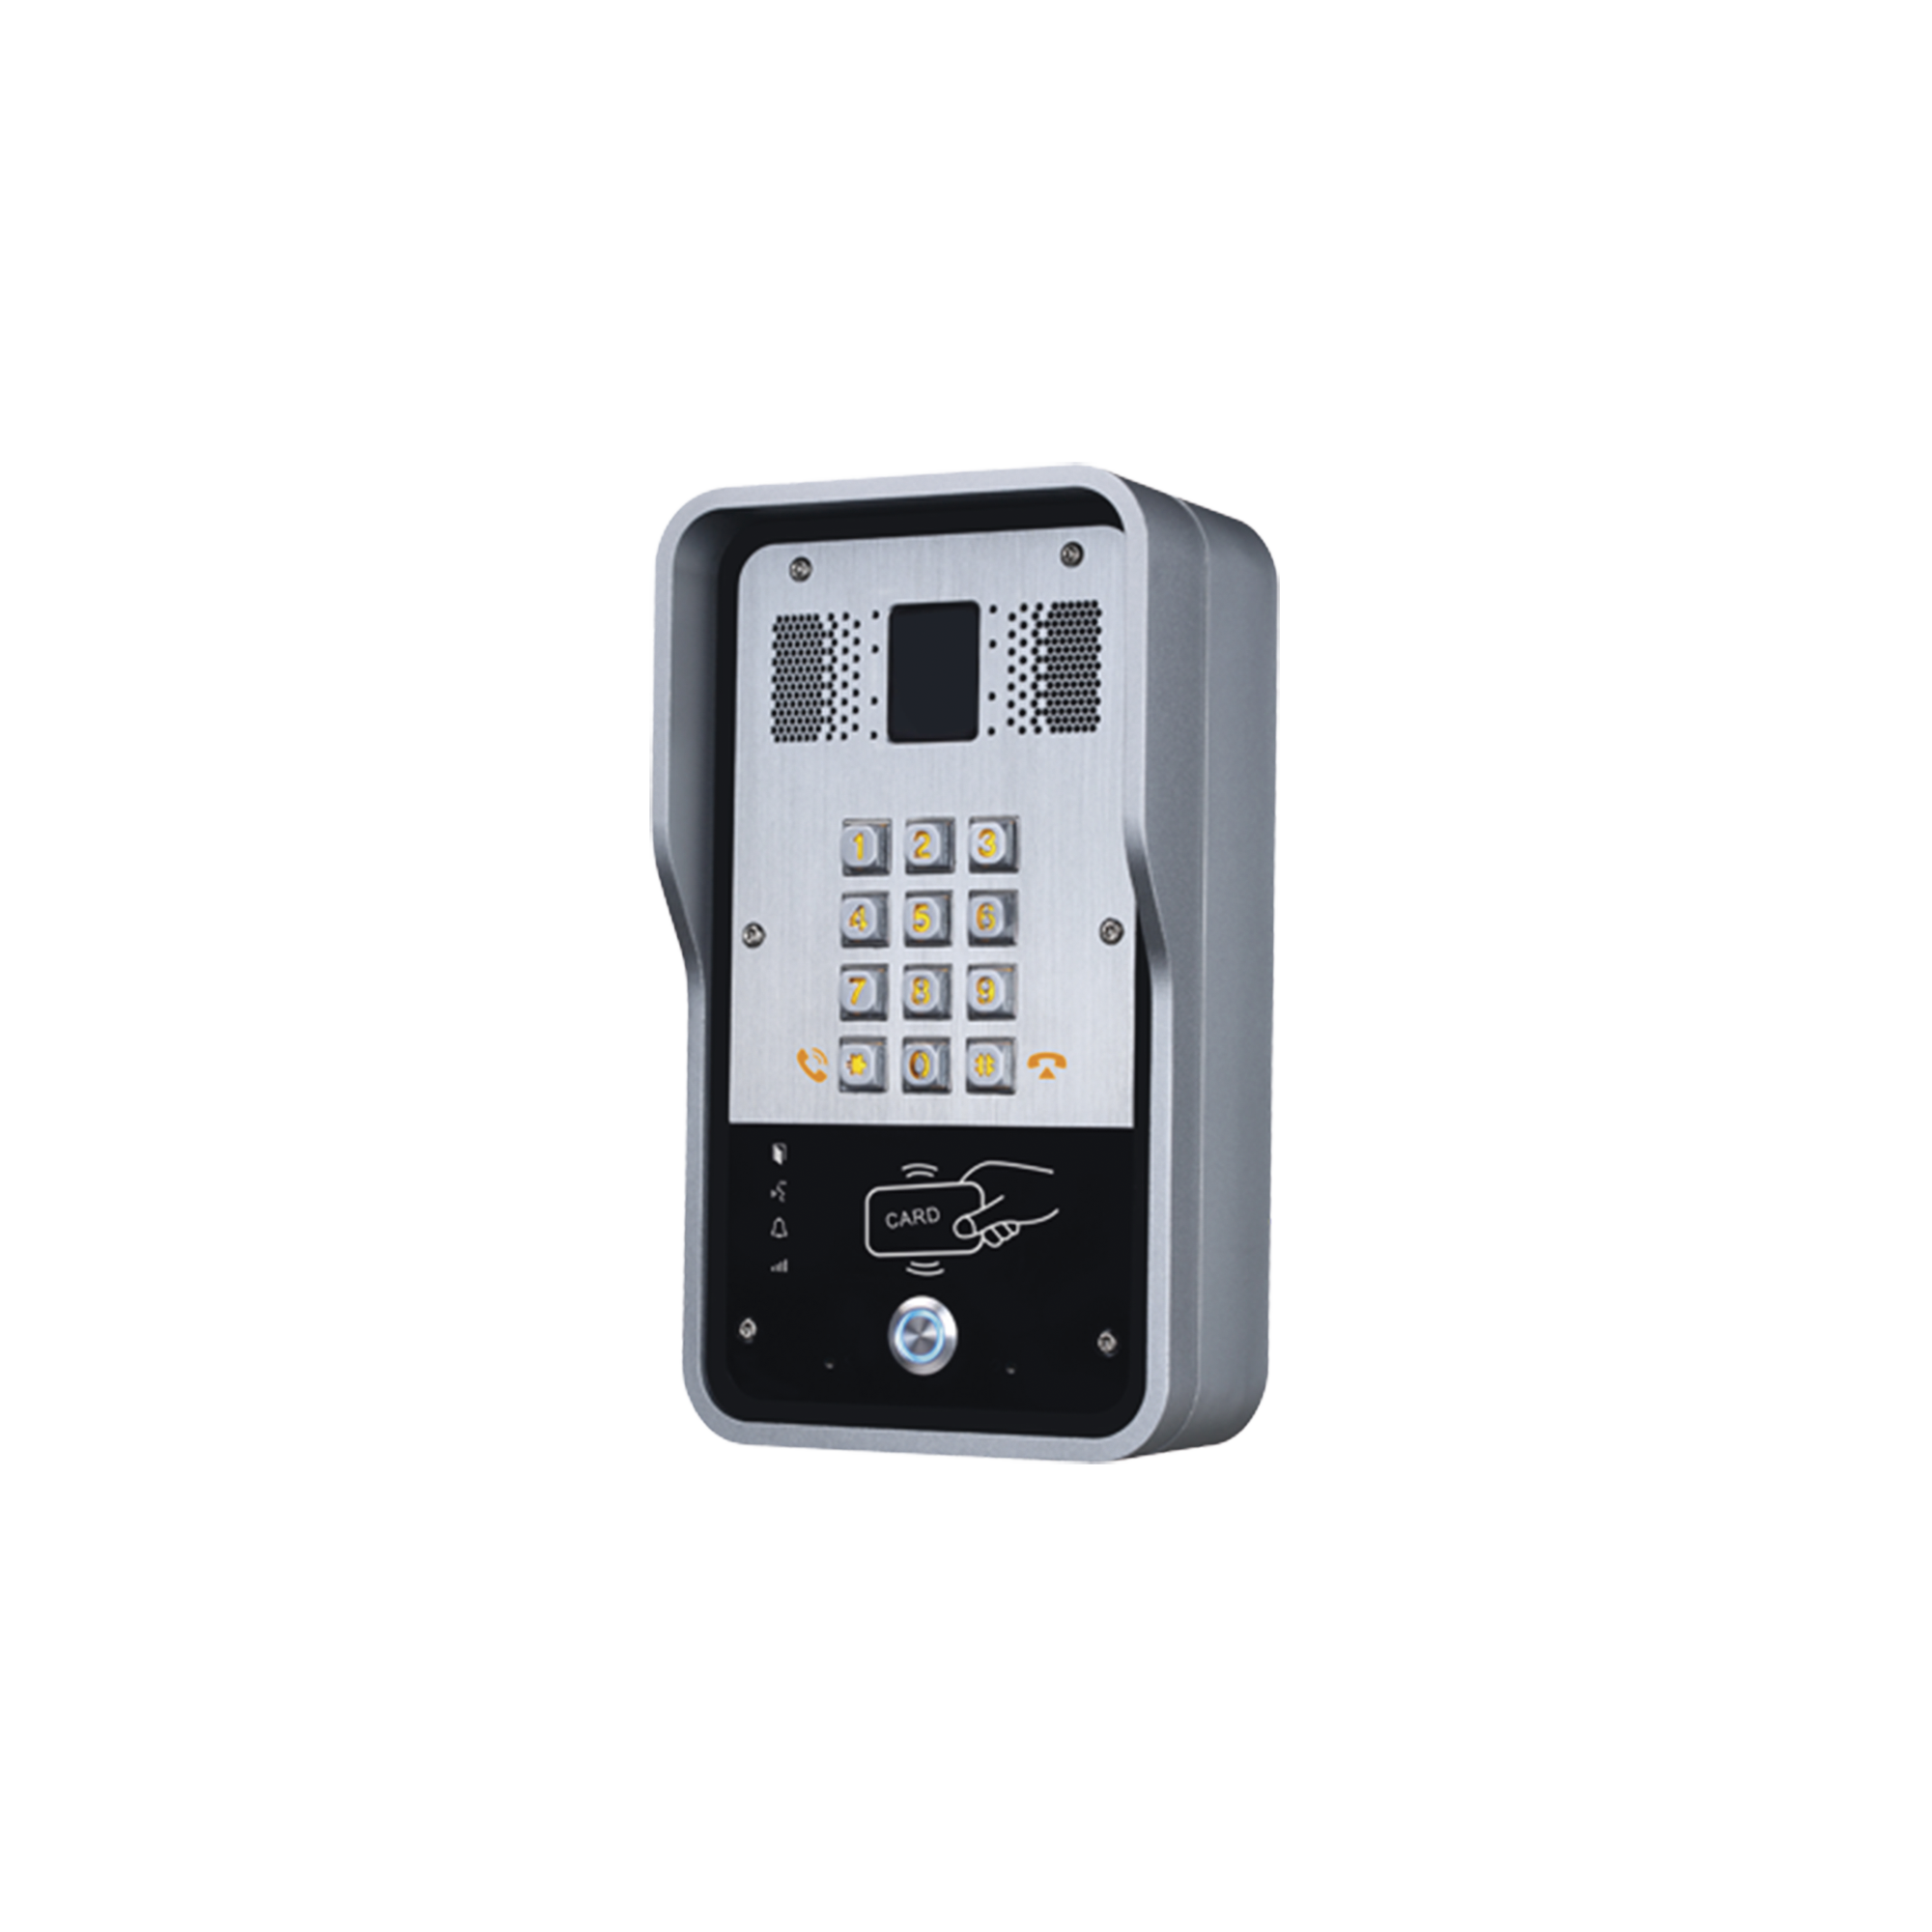 Audio Portero IP  2 líneas SIP con relevador integrado, Lector RFID para acceso por clave numérica, tarjeta o llamada remota, PoE